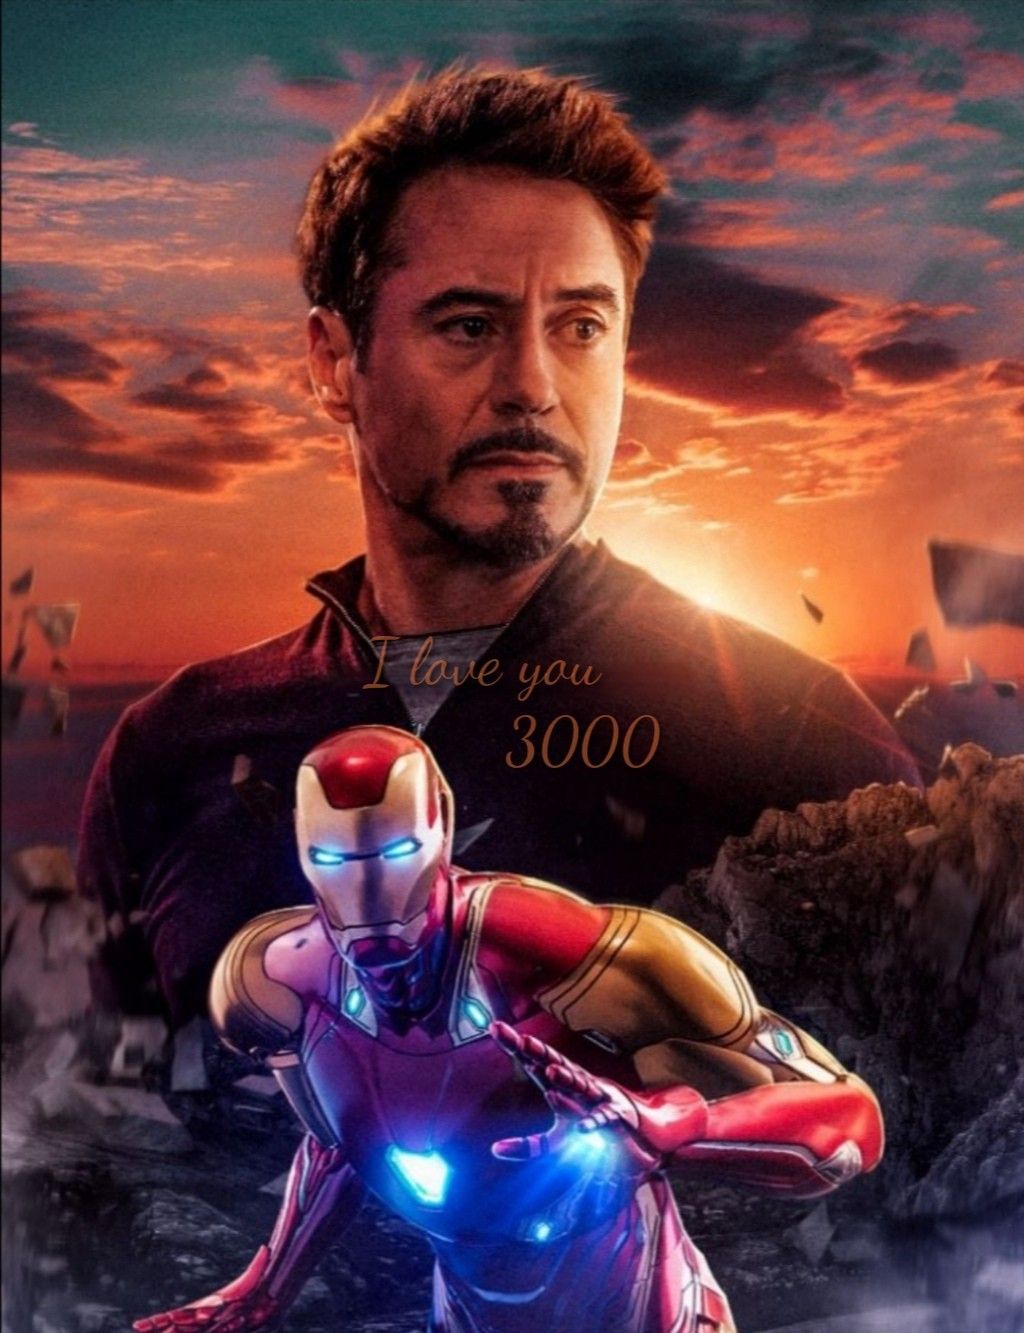 I love you 3000 ❤️ #TonyStark #IronMan #TheAvengersEndgame. Iron man stark, Iron man avengers, Marvel iron man